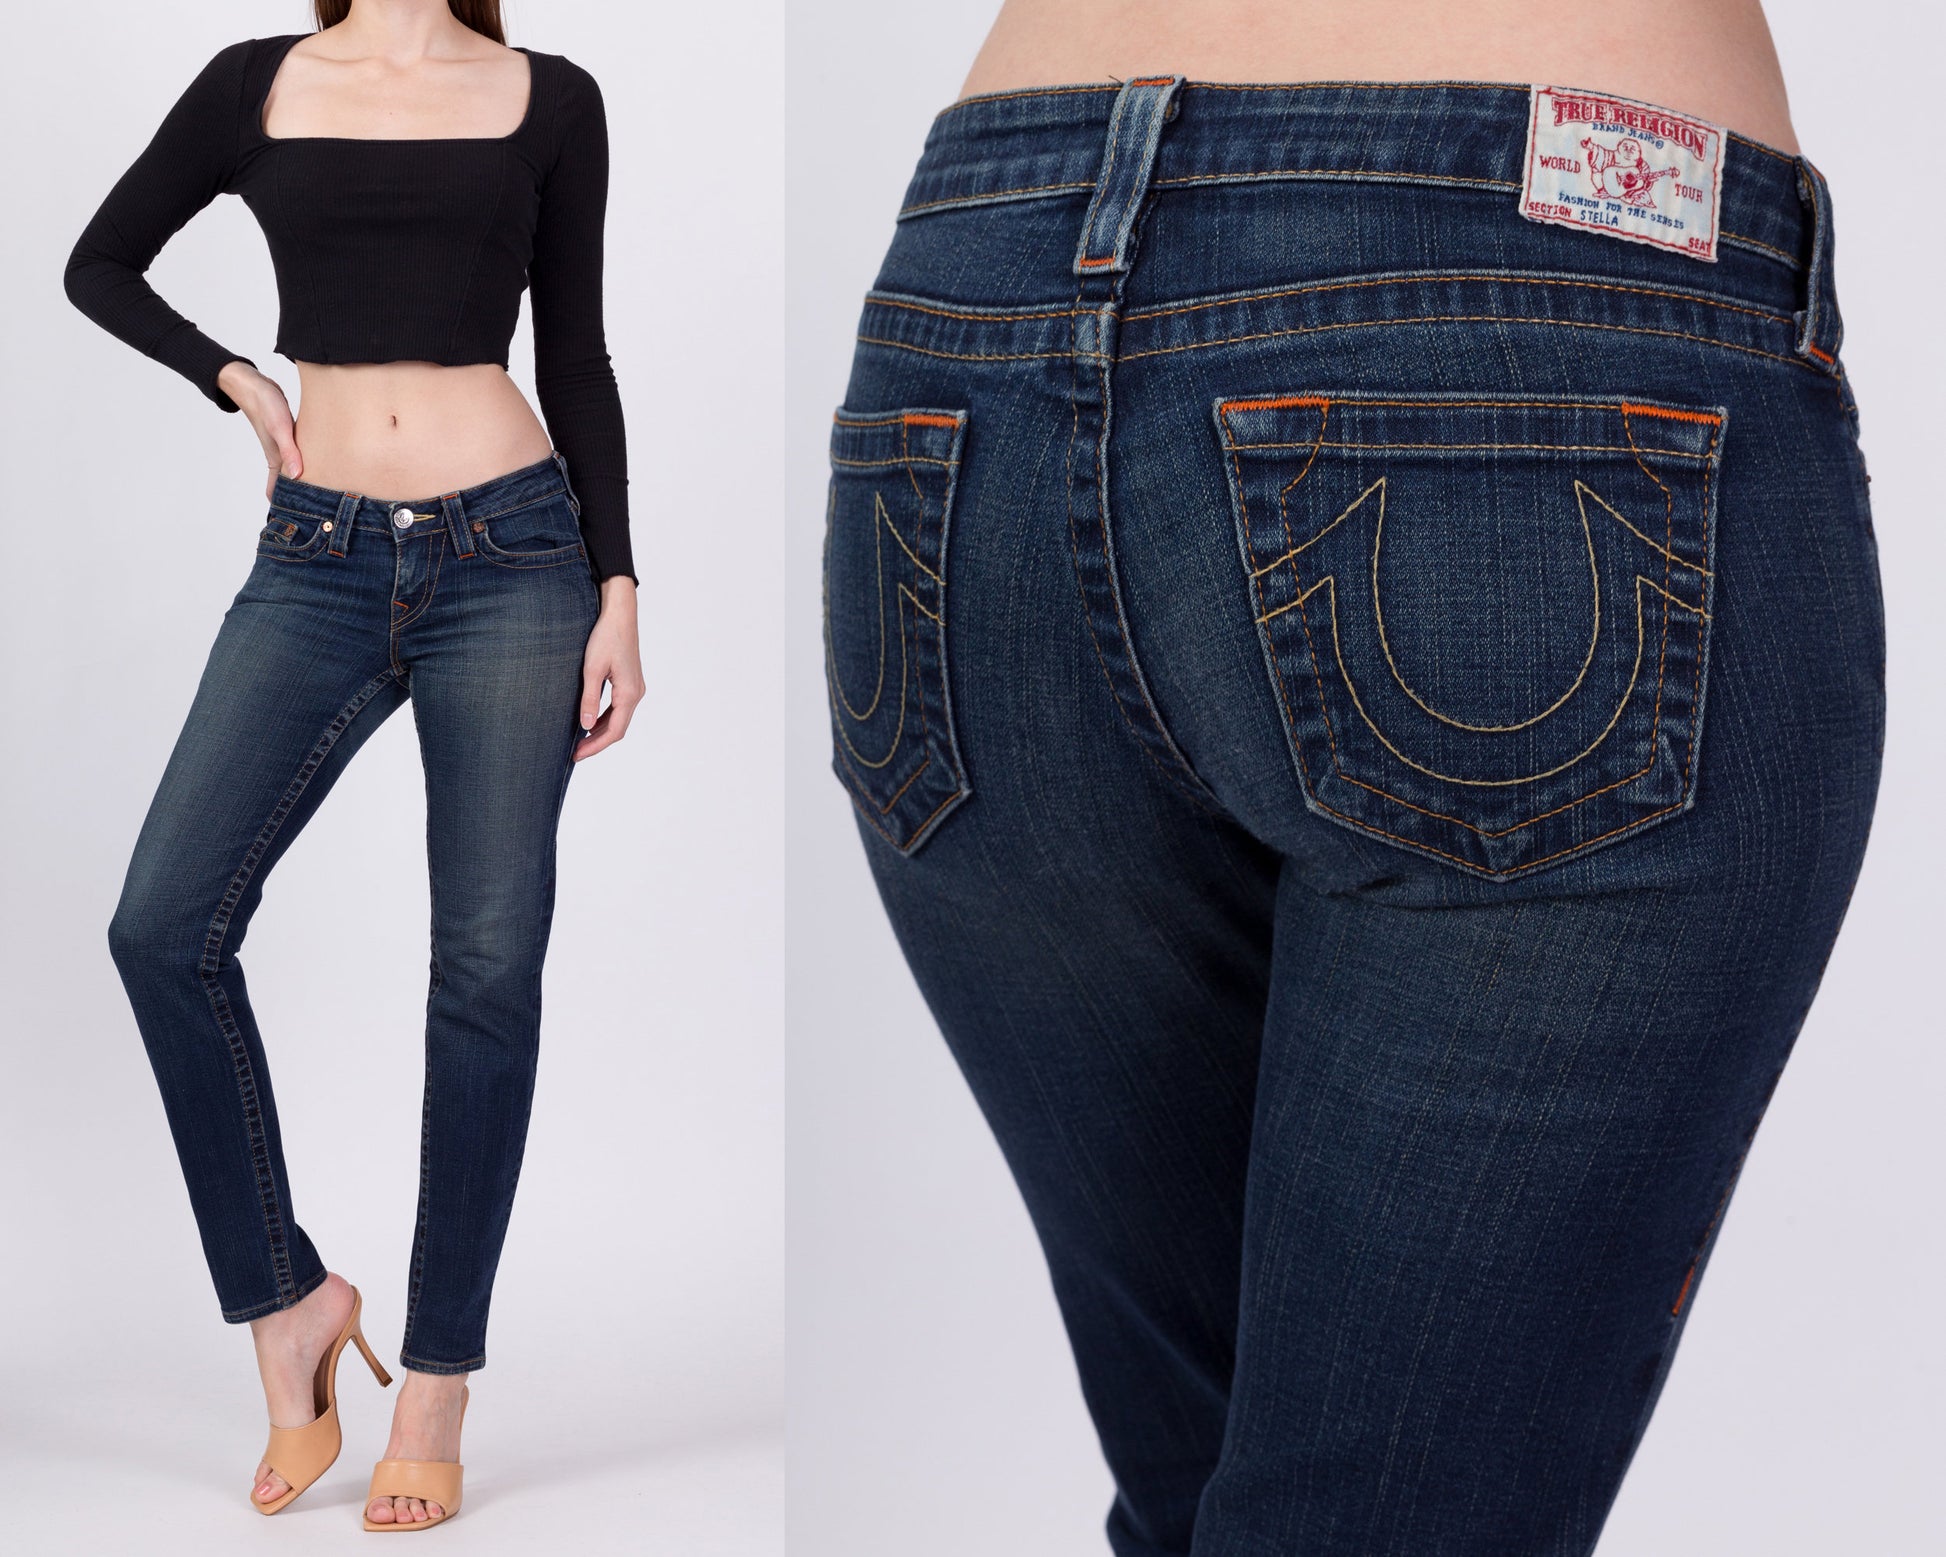 True Religion Women's Casey Low Rise Super Skinny Jeans in Ballad Blue